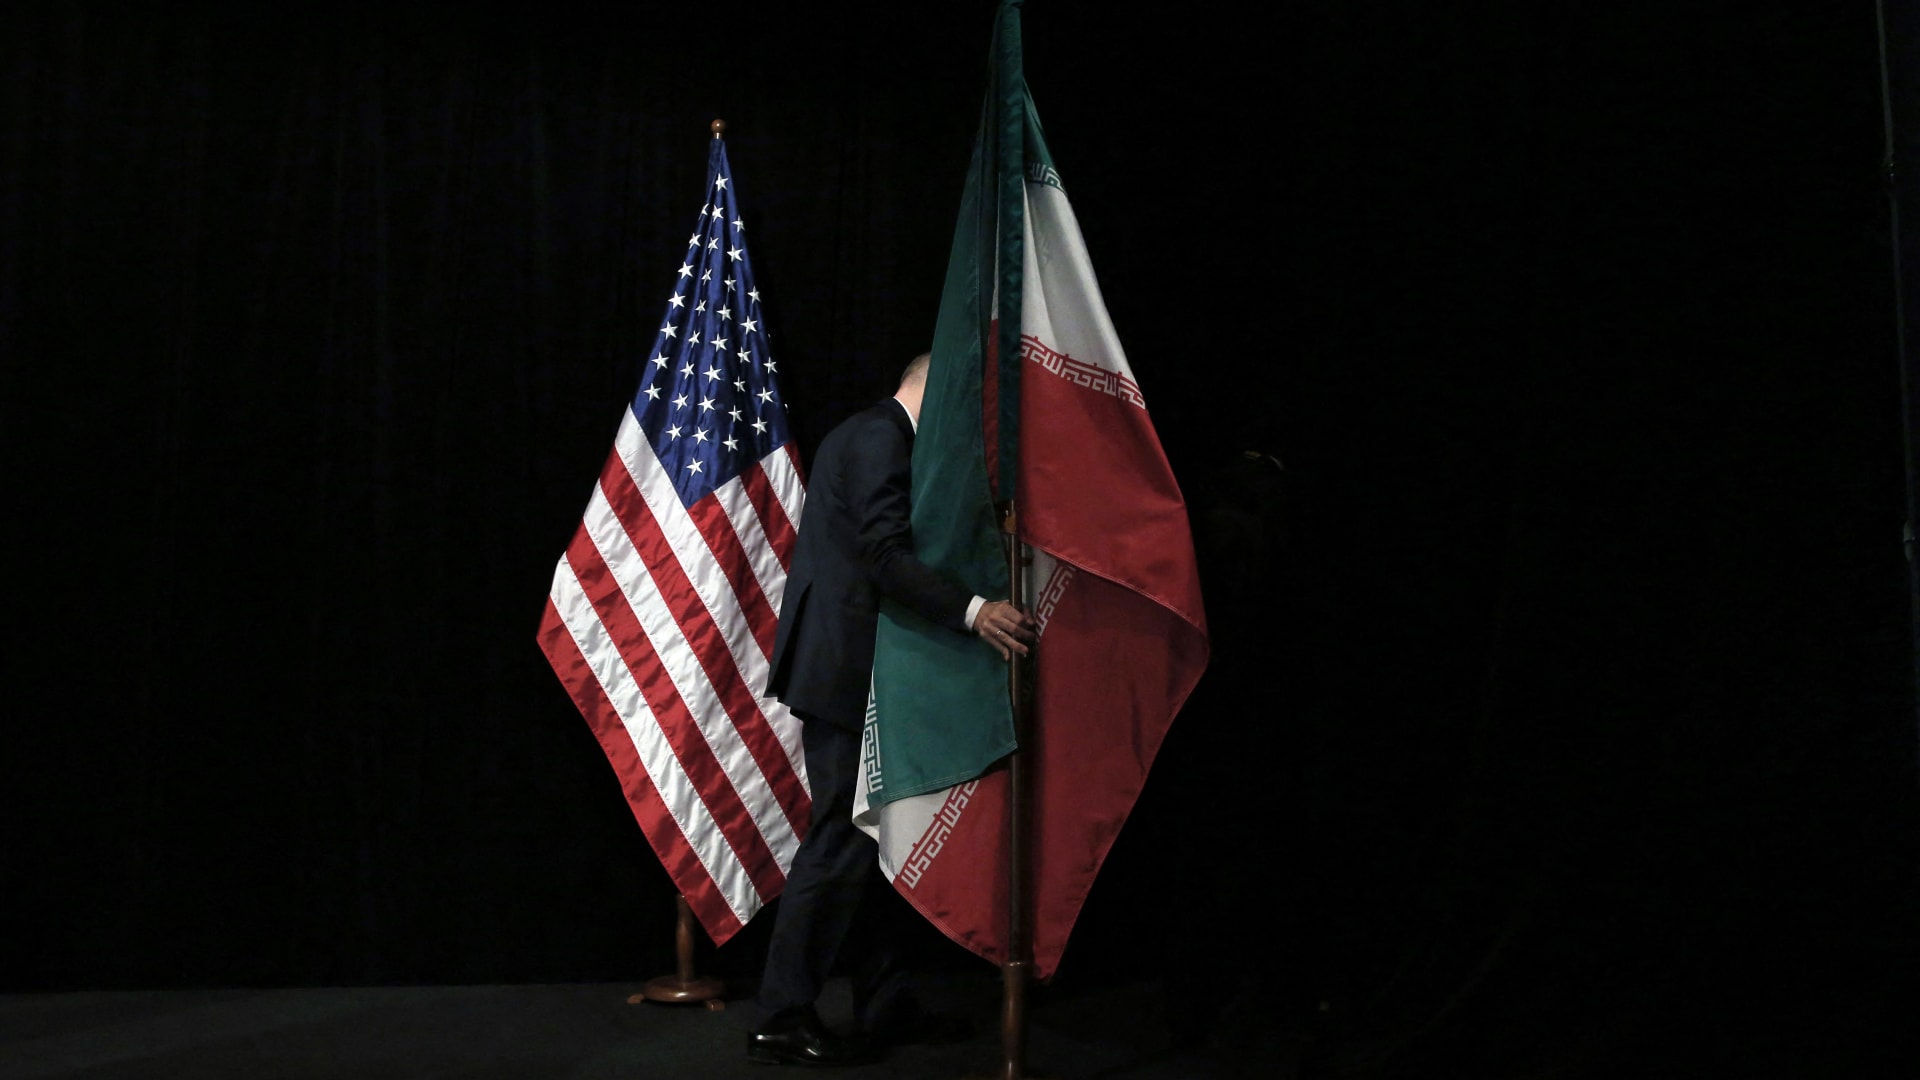 واشنطن تشعر بـ"خيبة أمل" بشأن المحادثات مع إيران.. ومسؤول أمريكي يوضح الأسباب